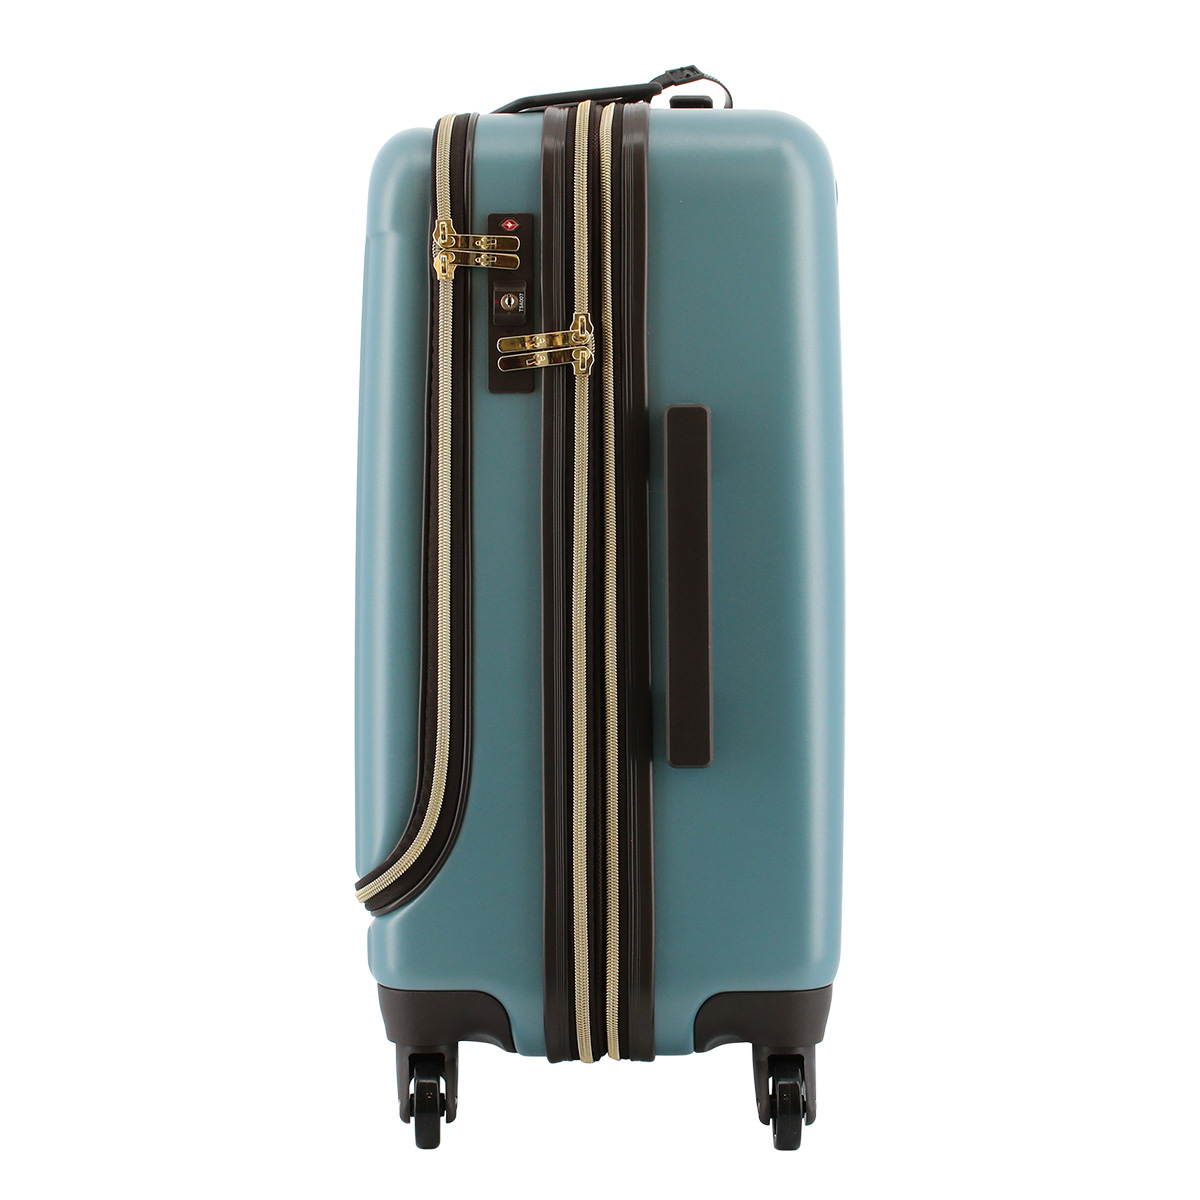 ムーミン スーツケース レディース 63L 55cm 4.7kg MM2-030 MOOMINミィ 